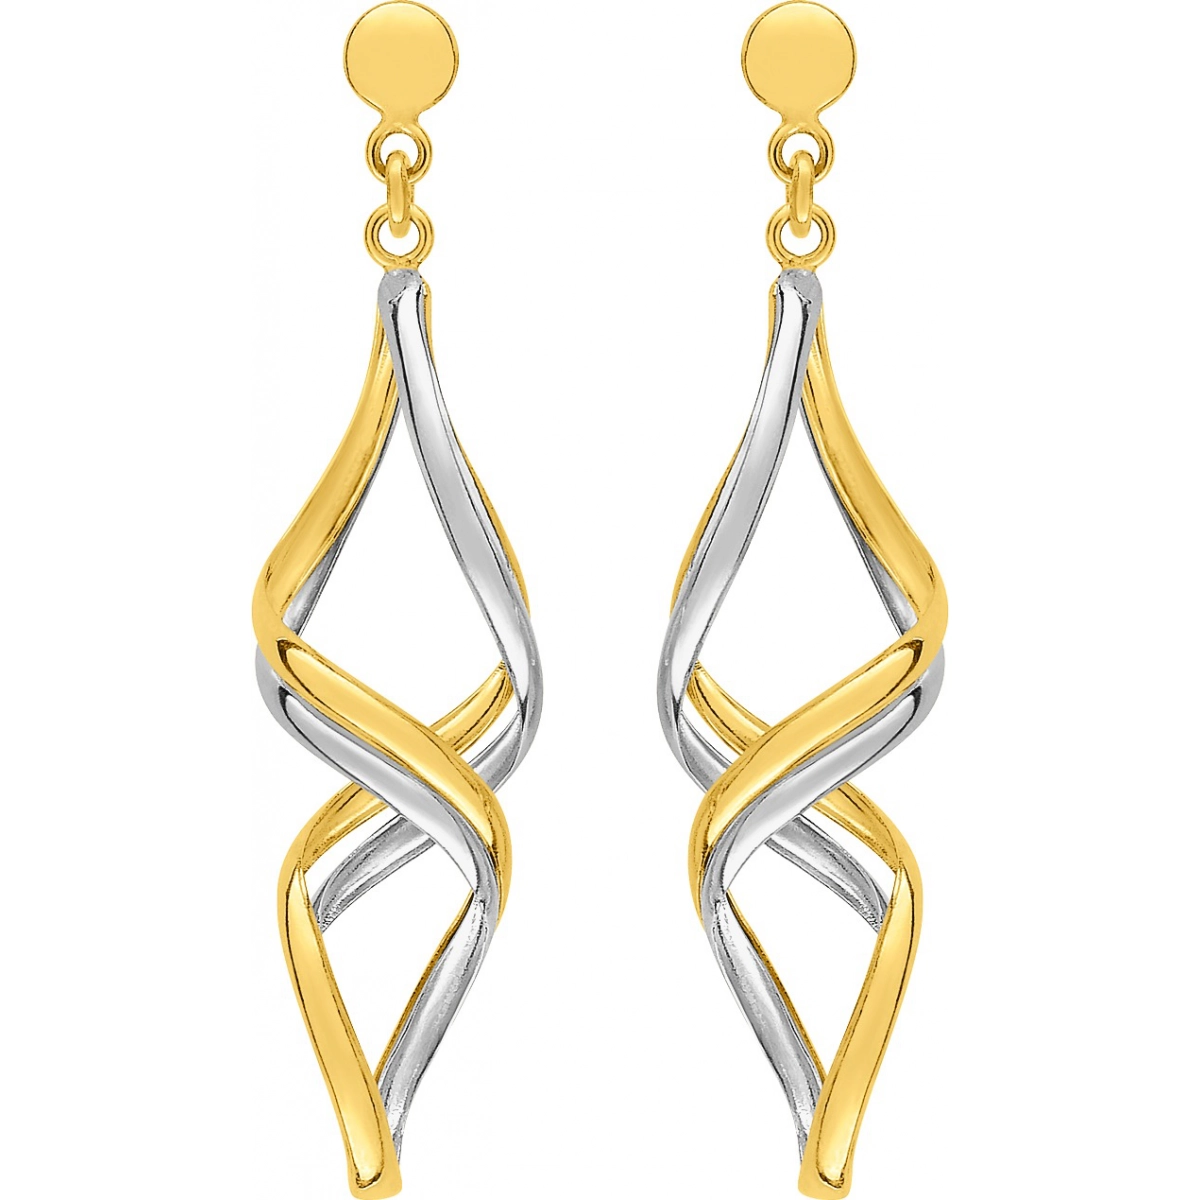 Earrings pair plain gold 9K 2TG Lua Blanca  39SA696B.0